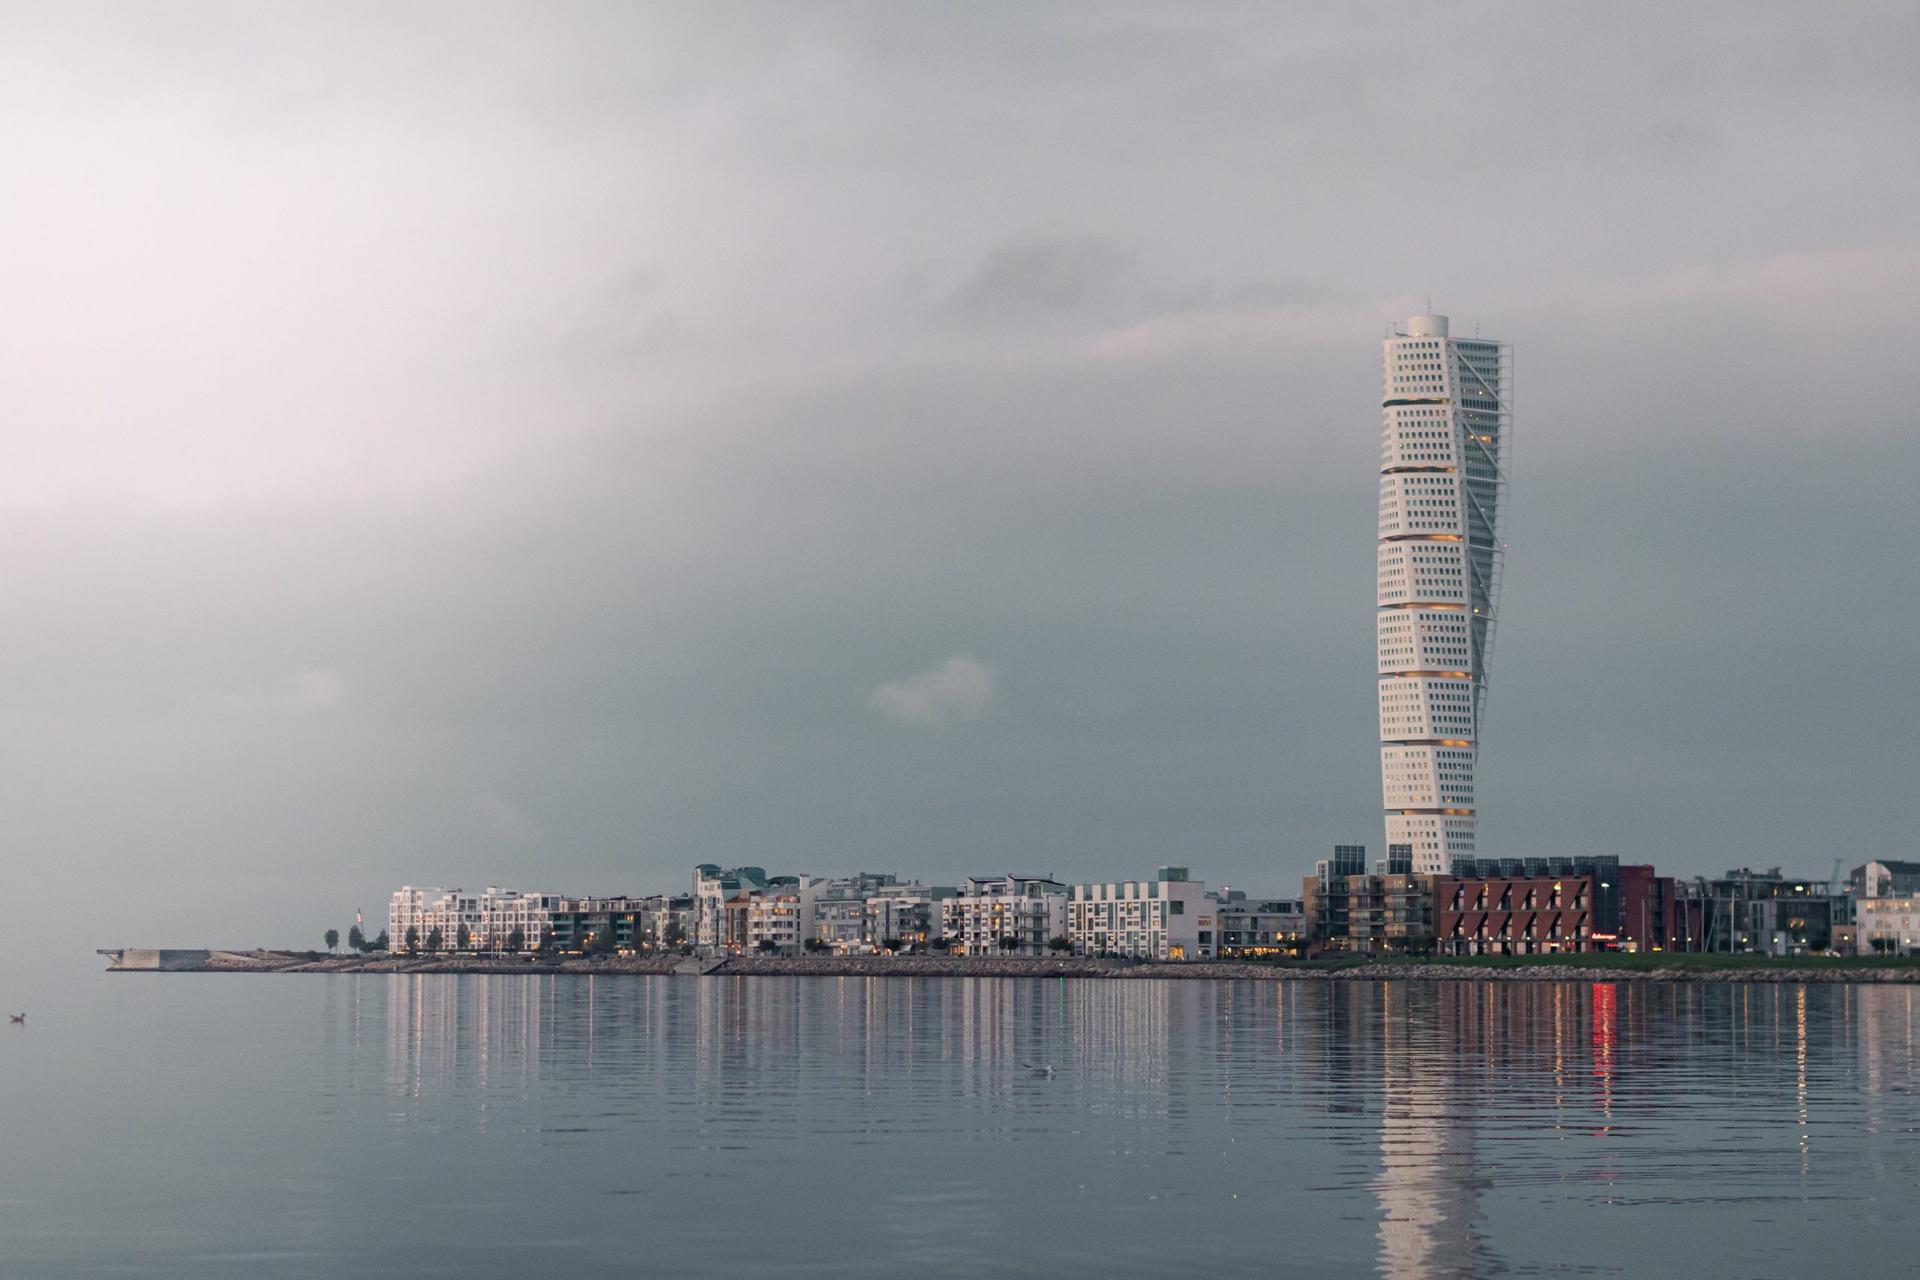 Interesta erbjuder ombildningar från hyresrätter till bostadsrätter i Malmö